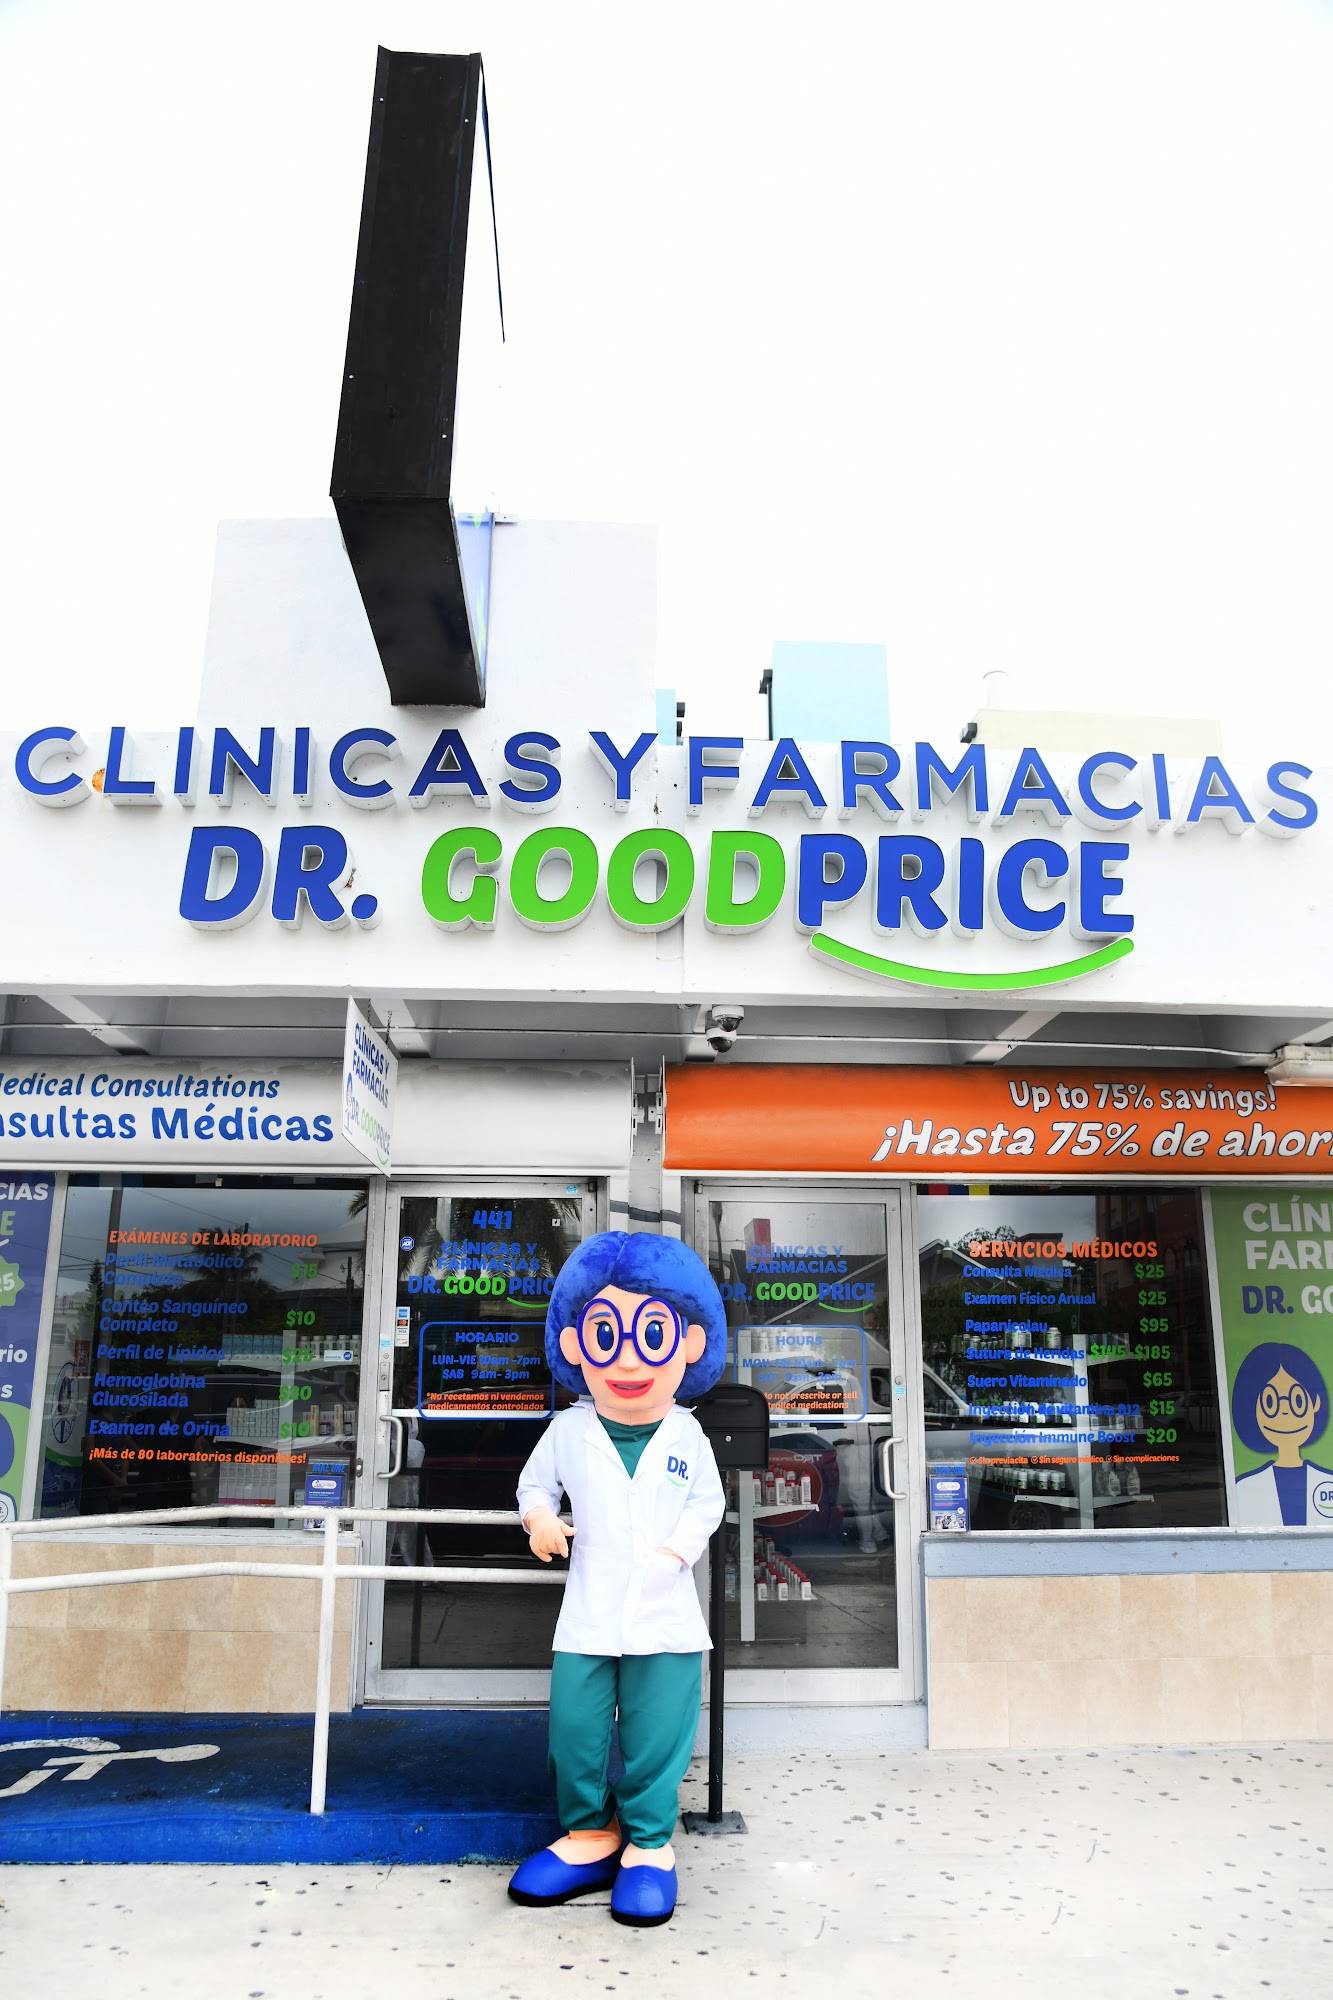 Clinicas Y Farmacias Dr. GoodPrice